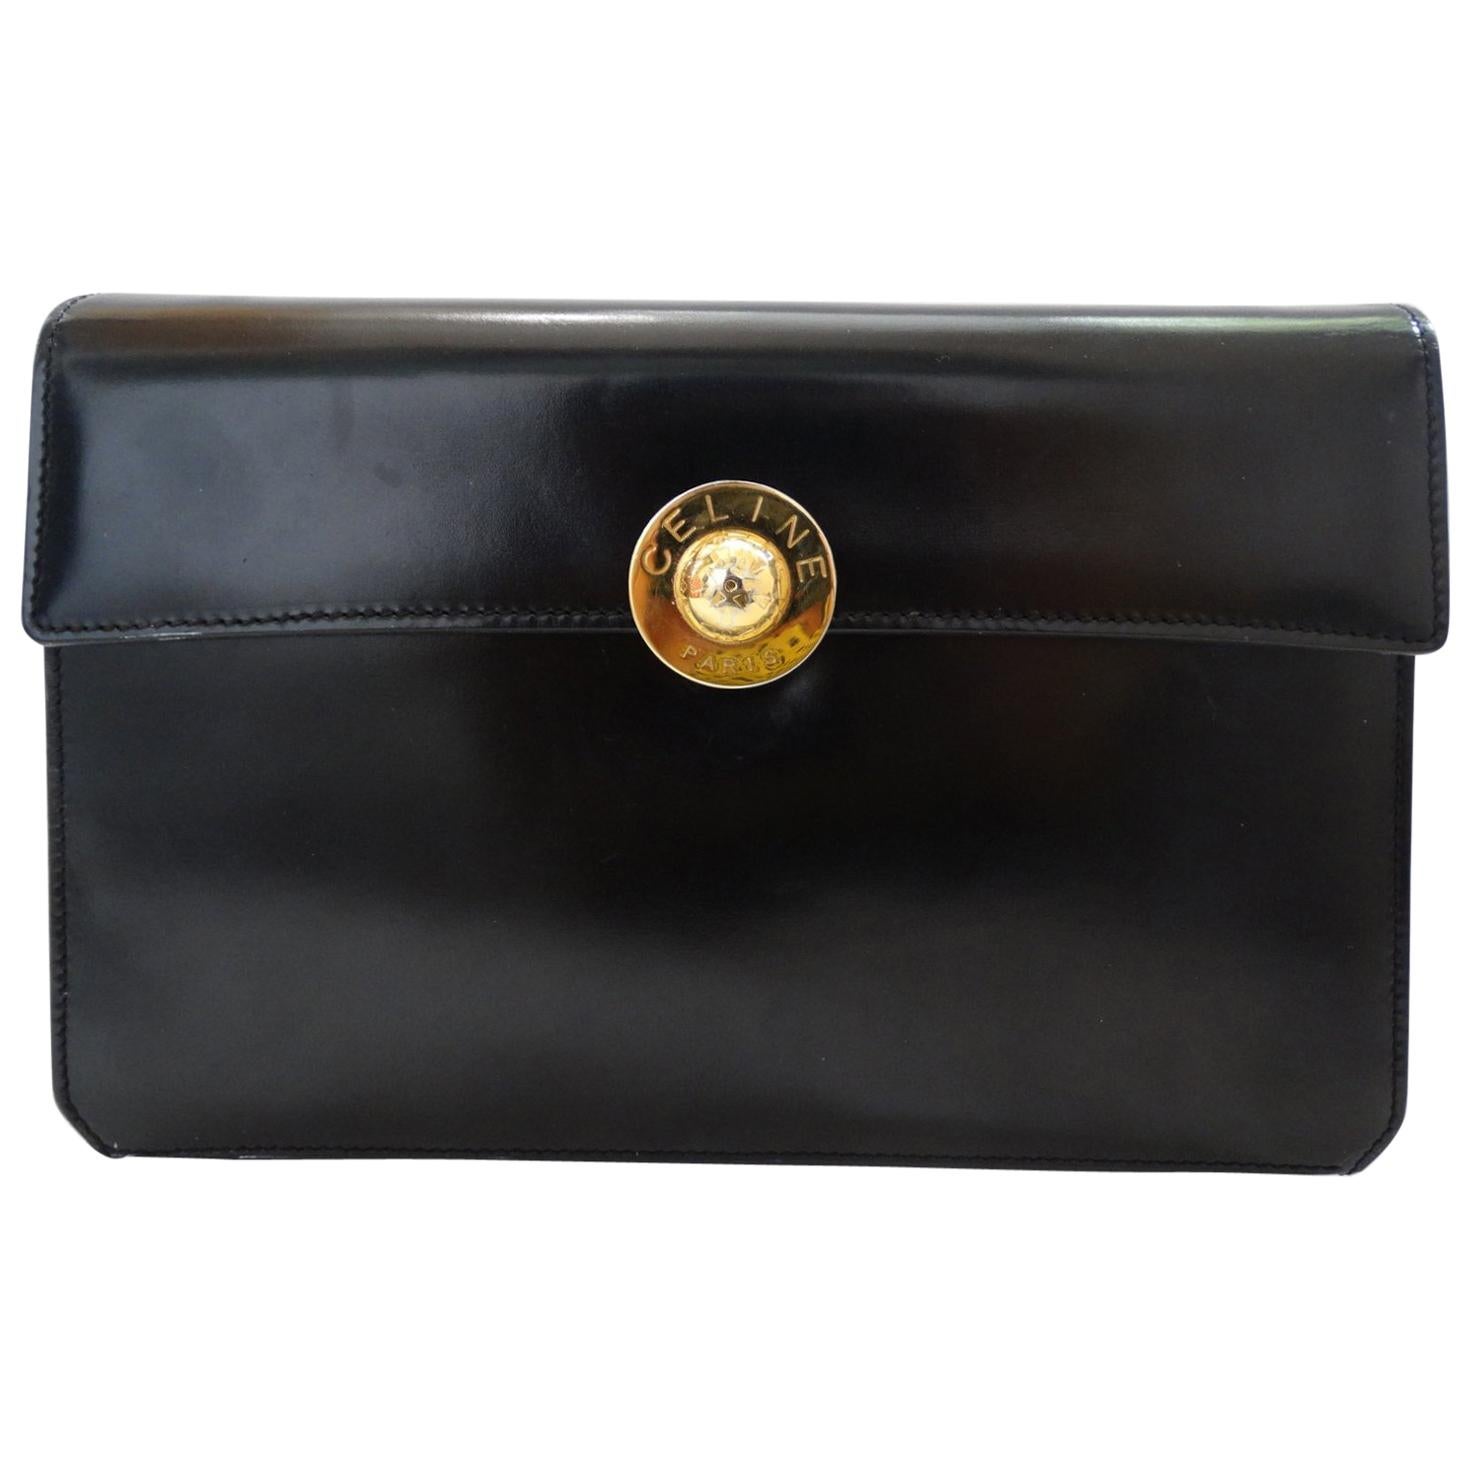 Celine Paris Black Leather Envelope Clutch 